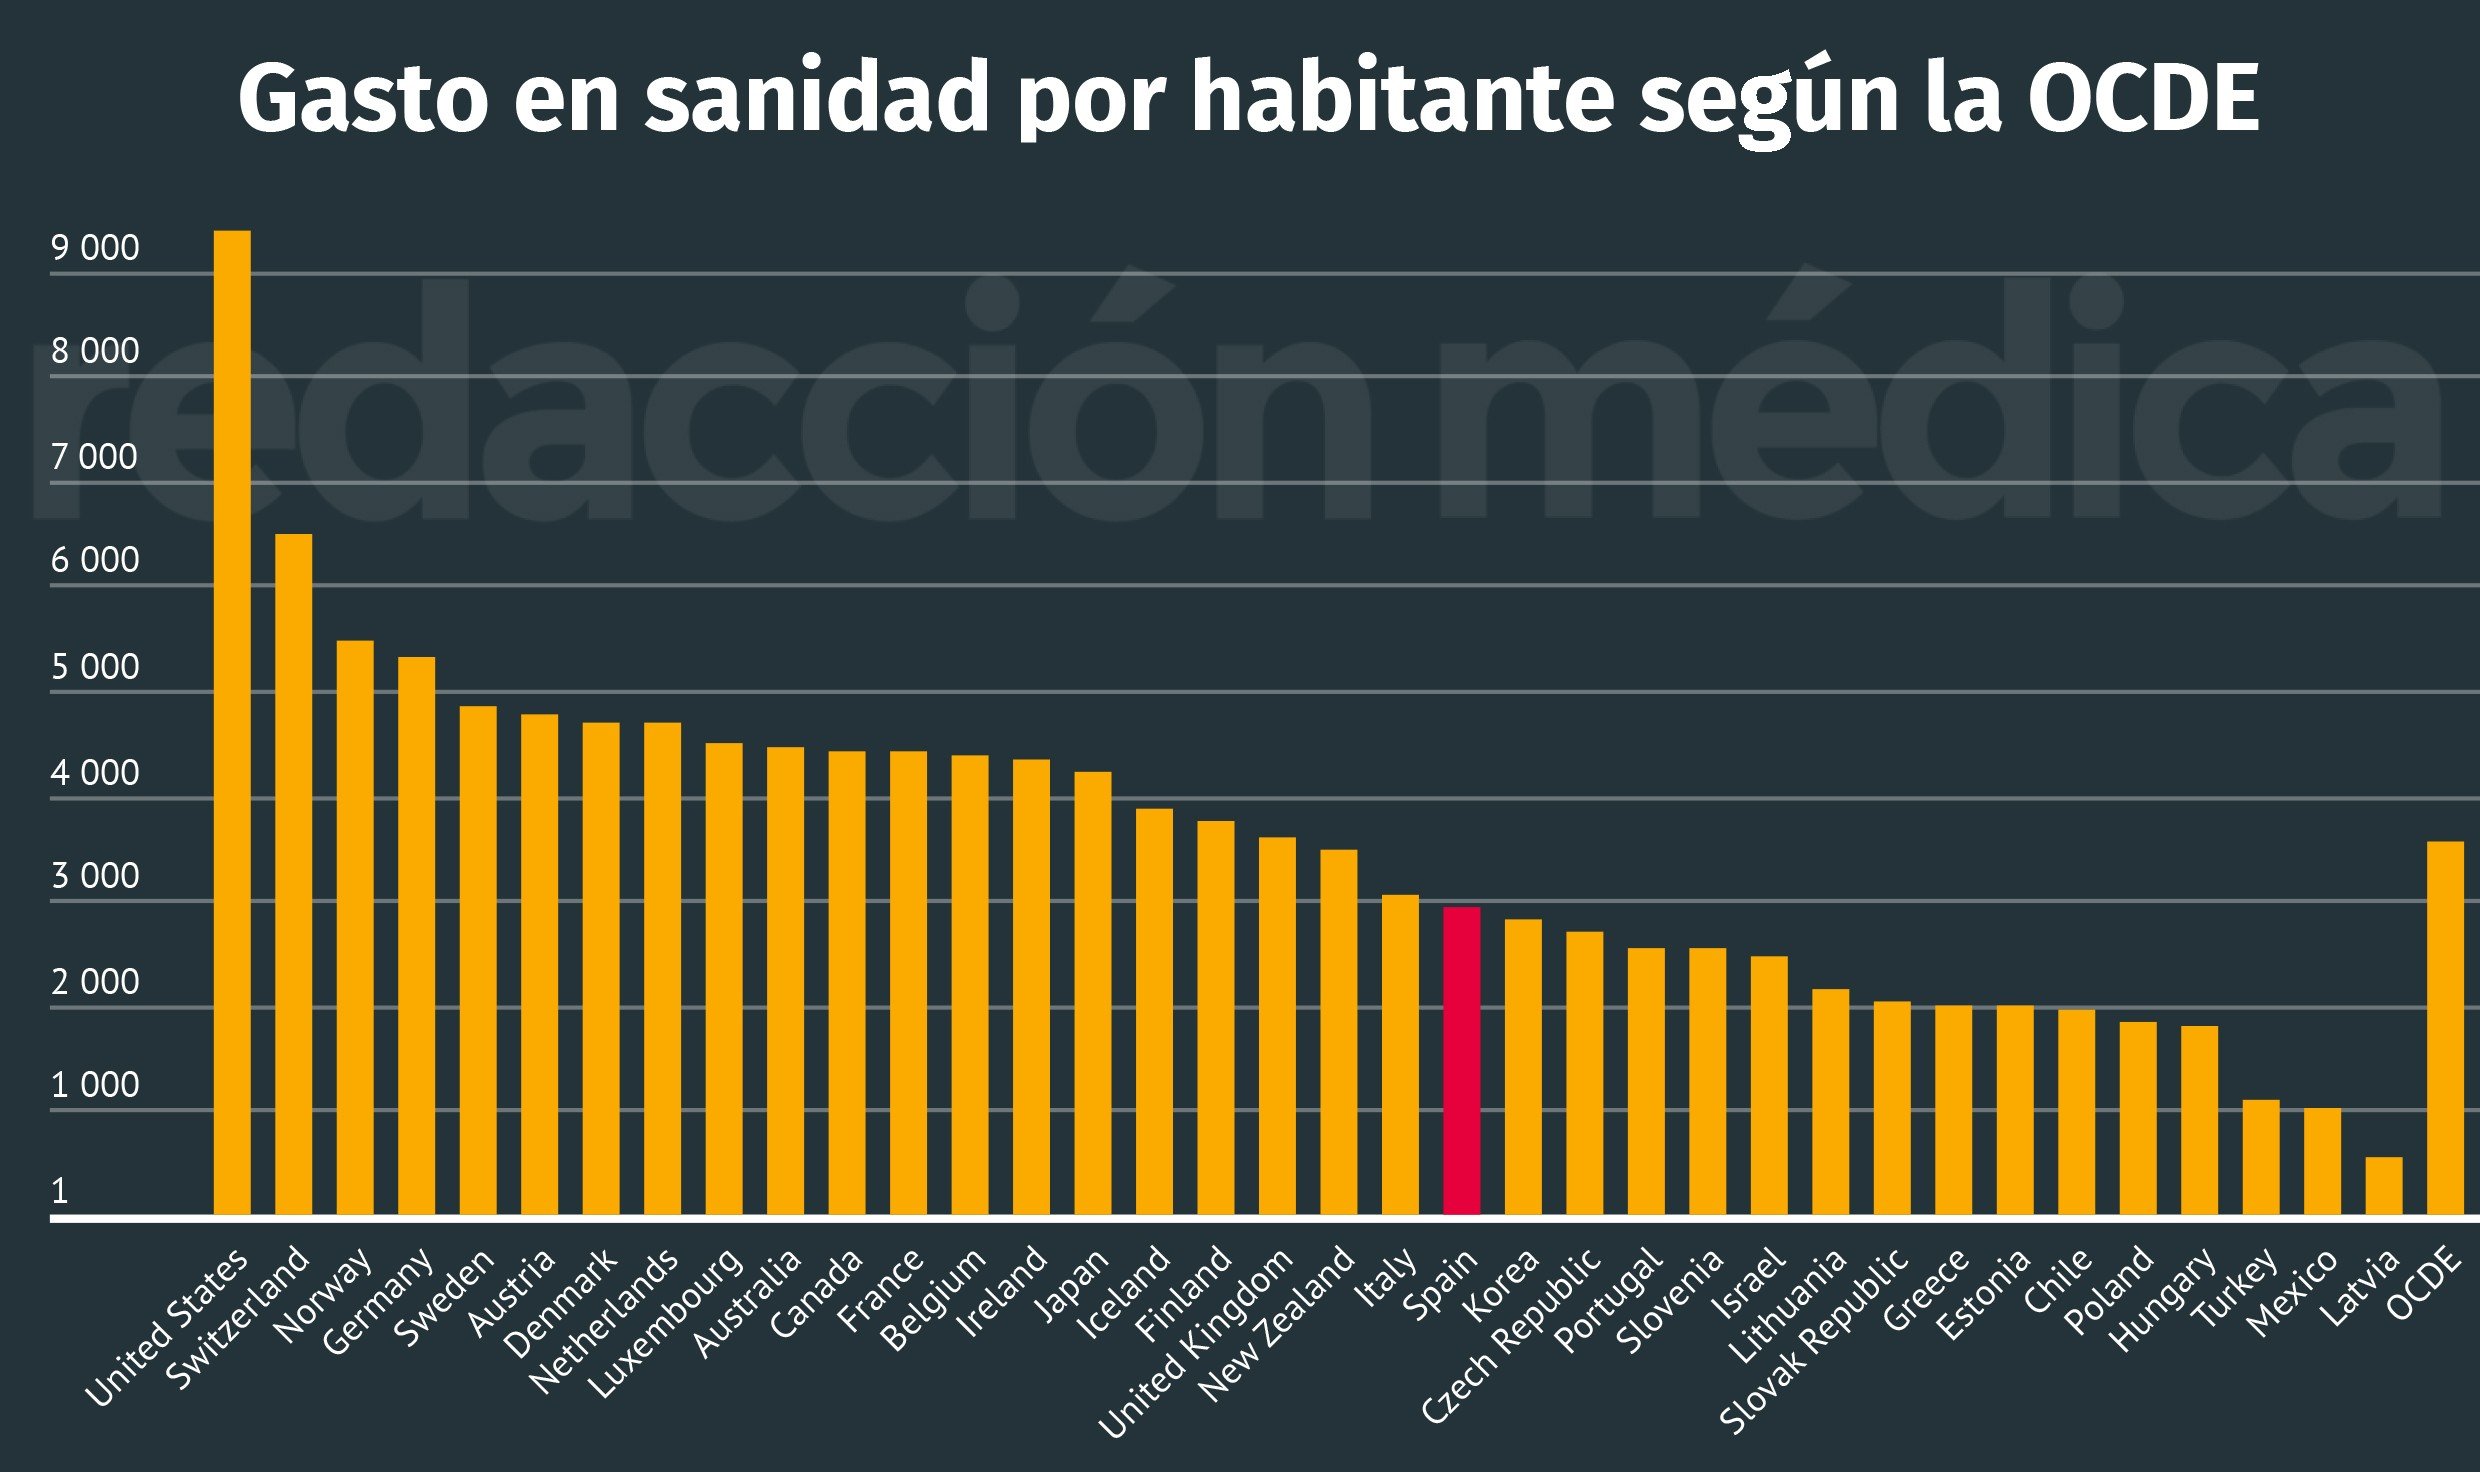 España invierte 2.950 euros per cápita en sanidad